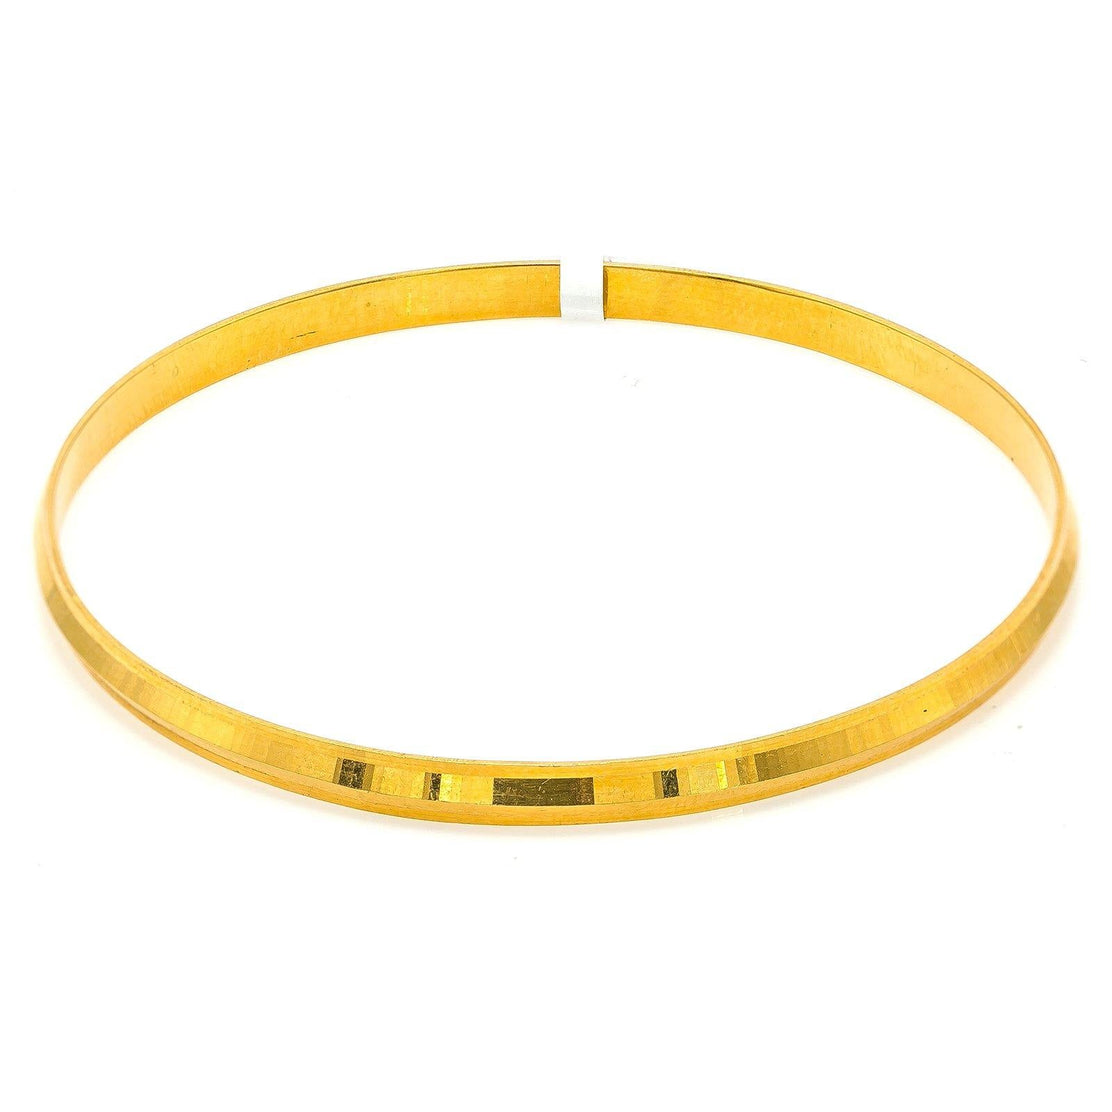 3 Size Stunning Gold Plated kada Sikh Singh Kara Kada Bracelet For Men K58  | eBay